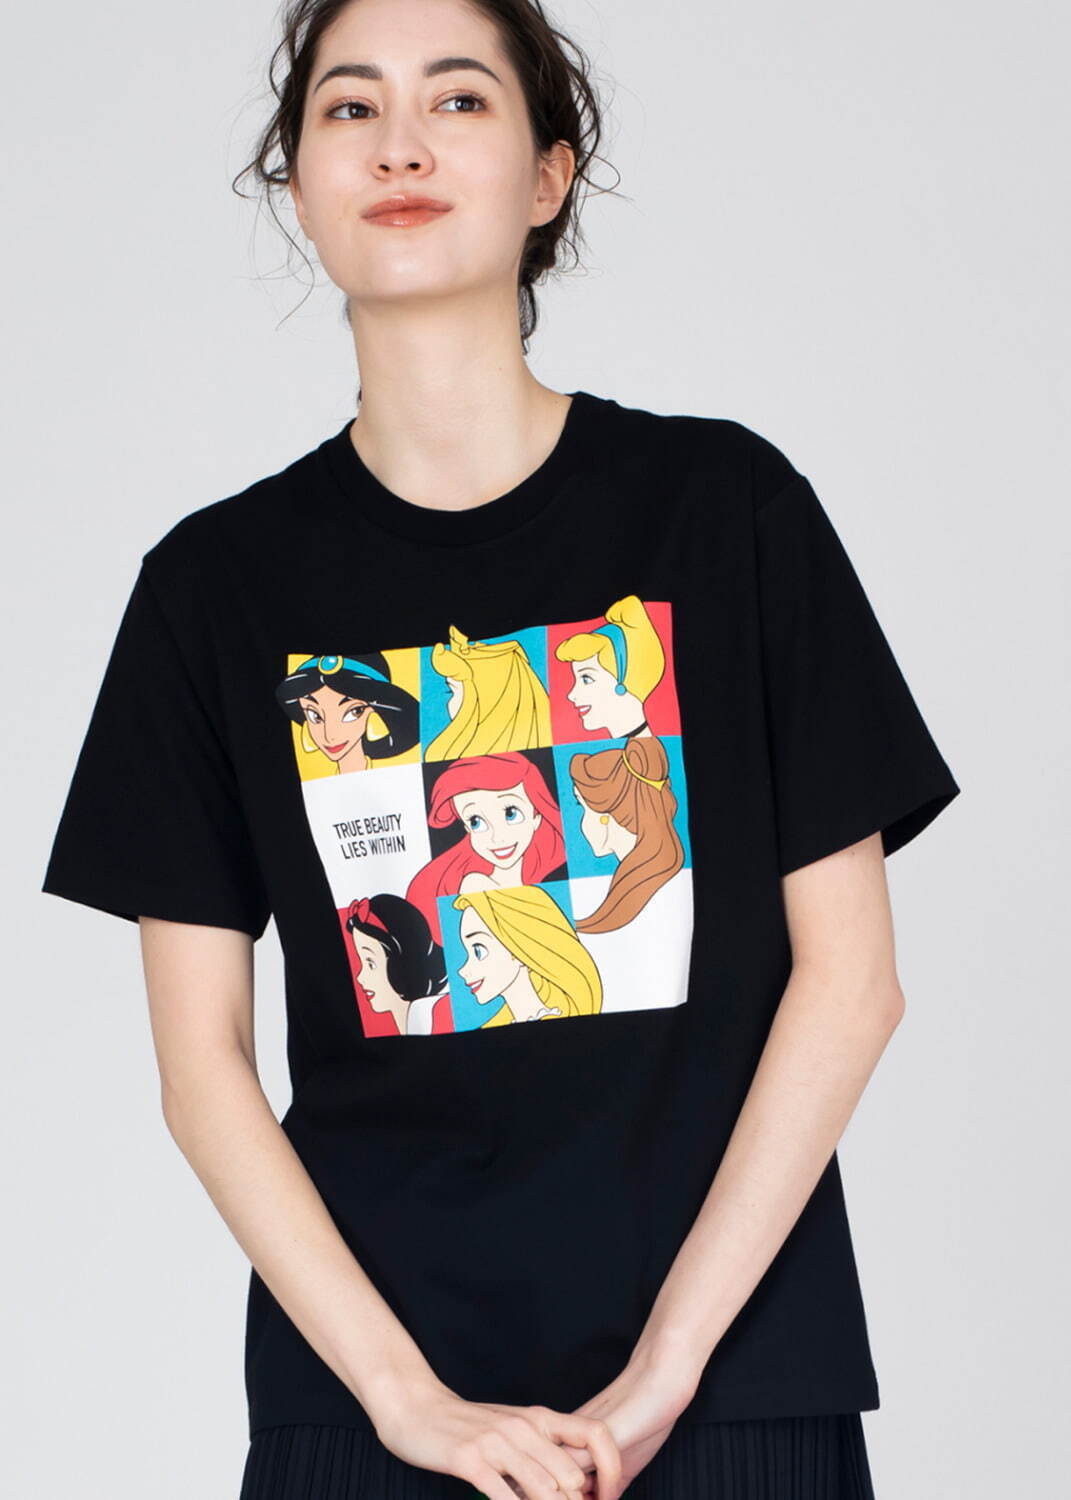 Tシャツ「プリンセス」2,750円